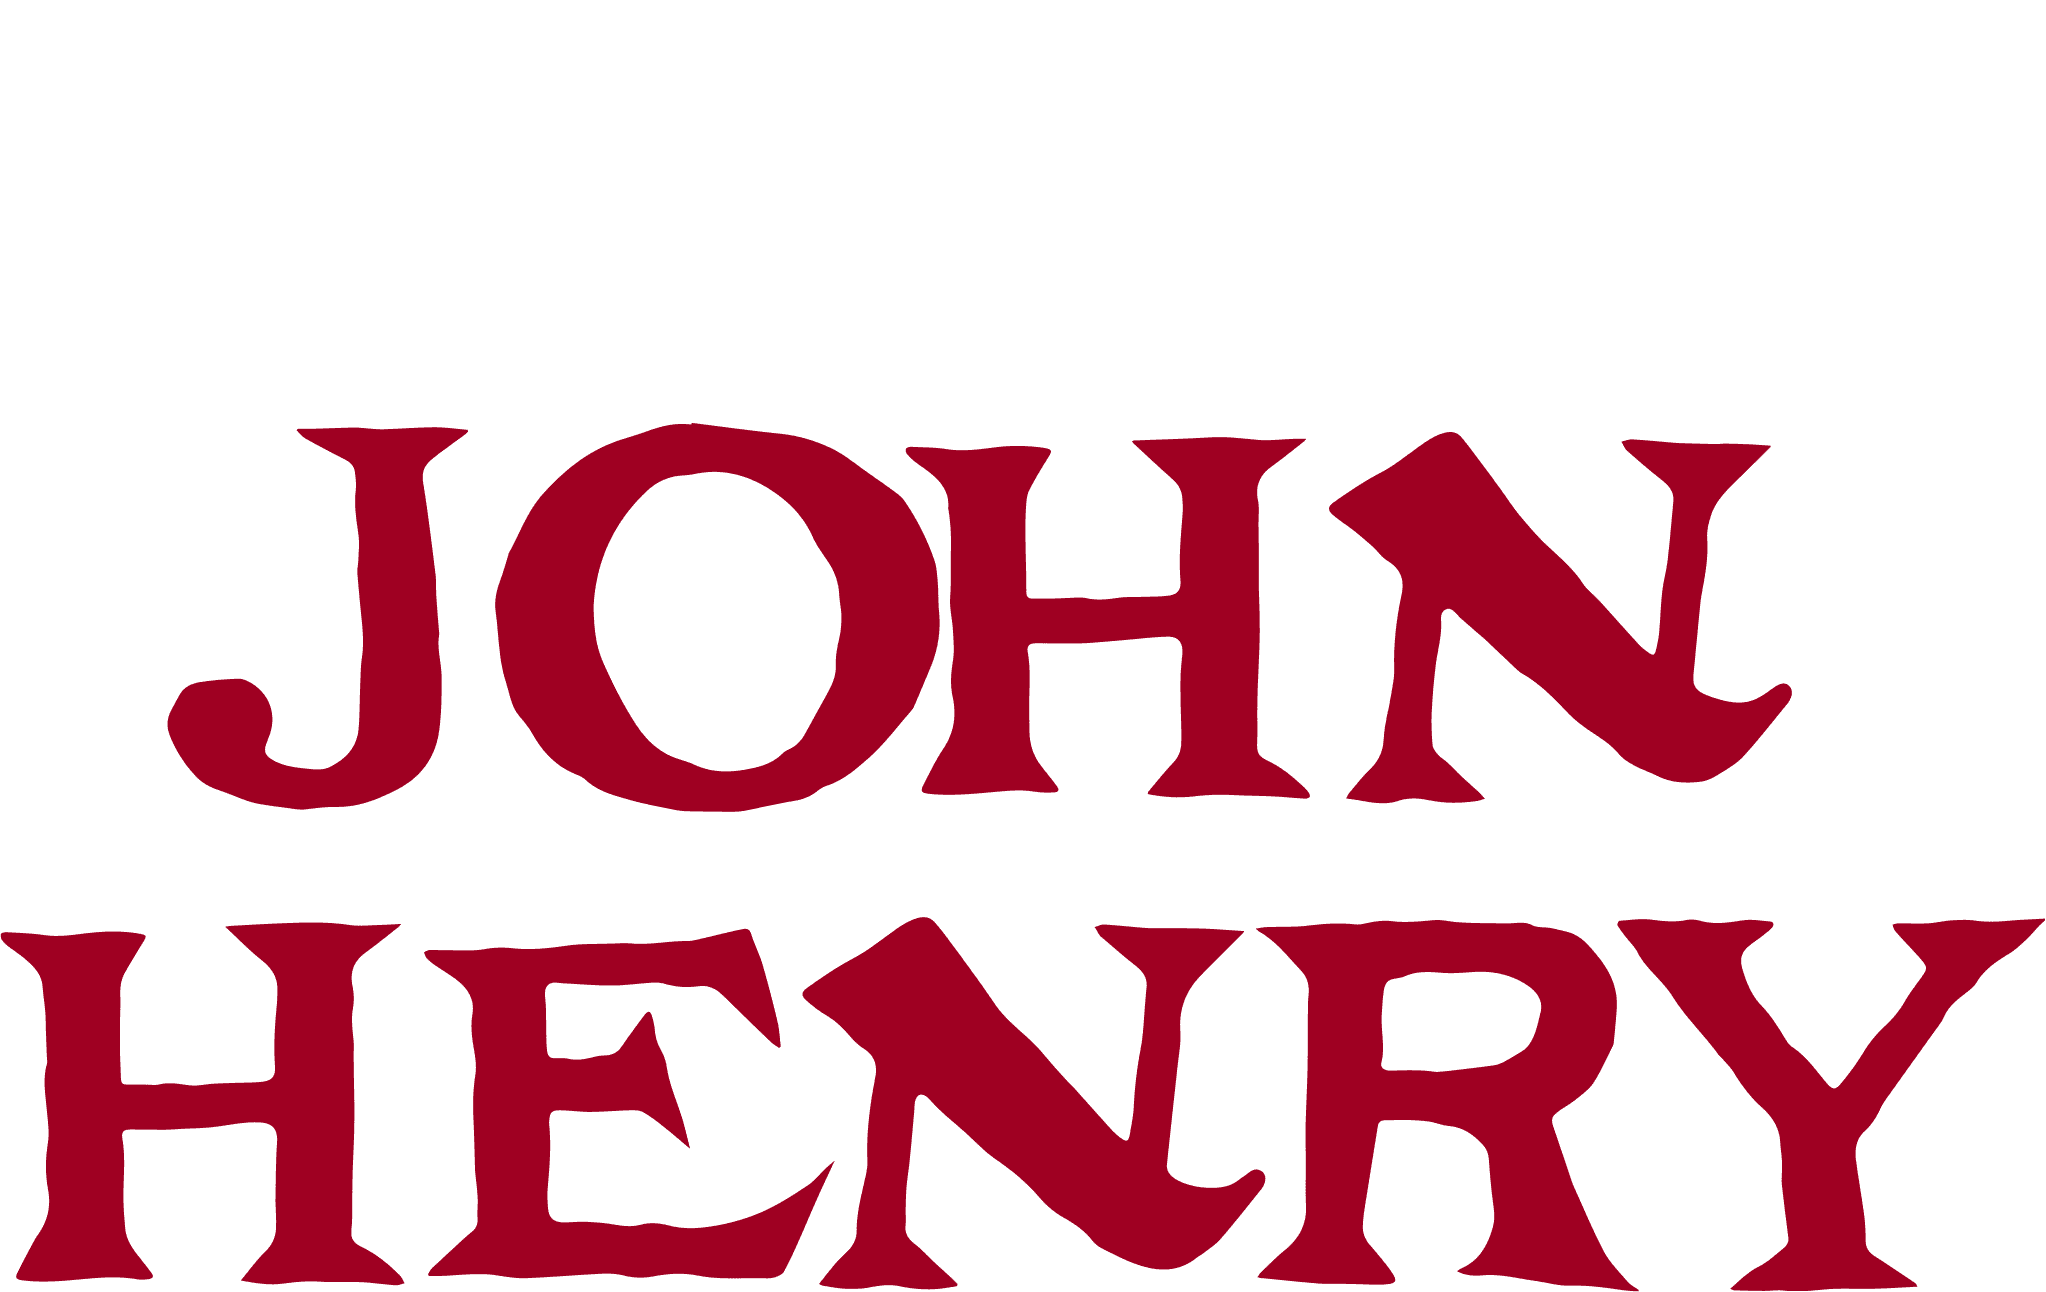 John Henry logo